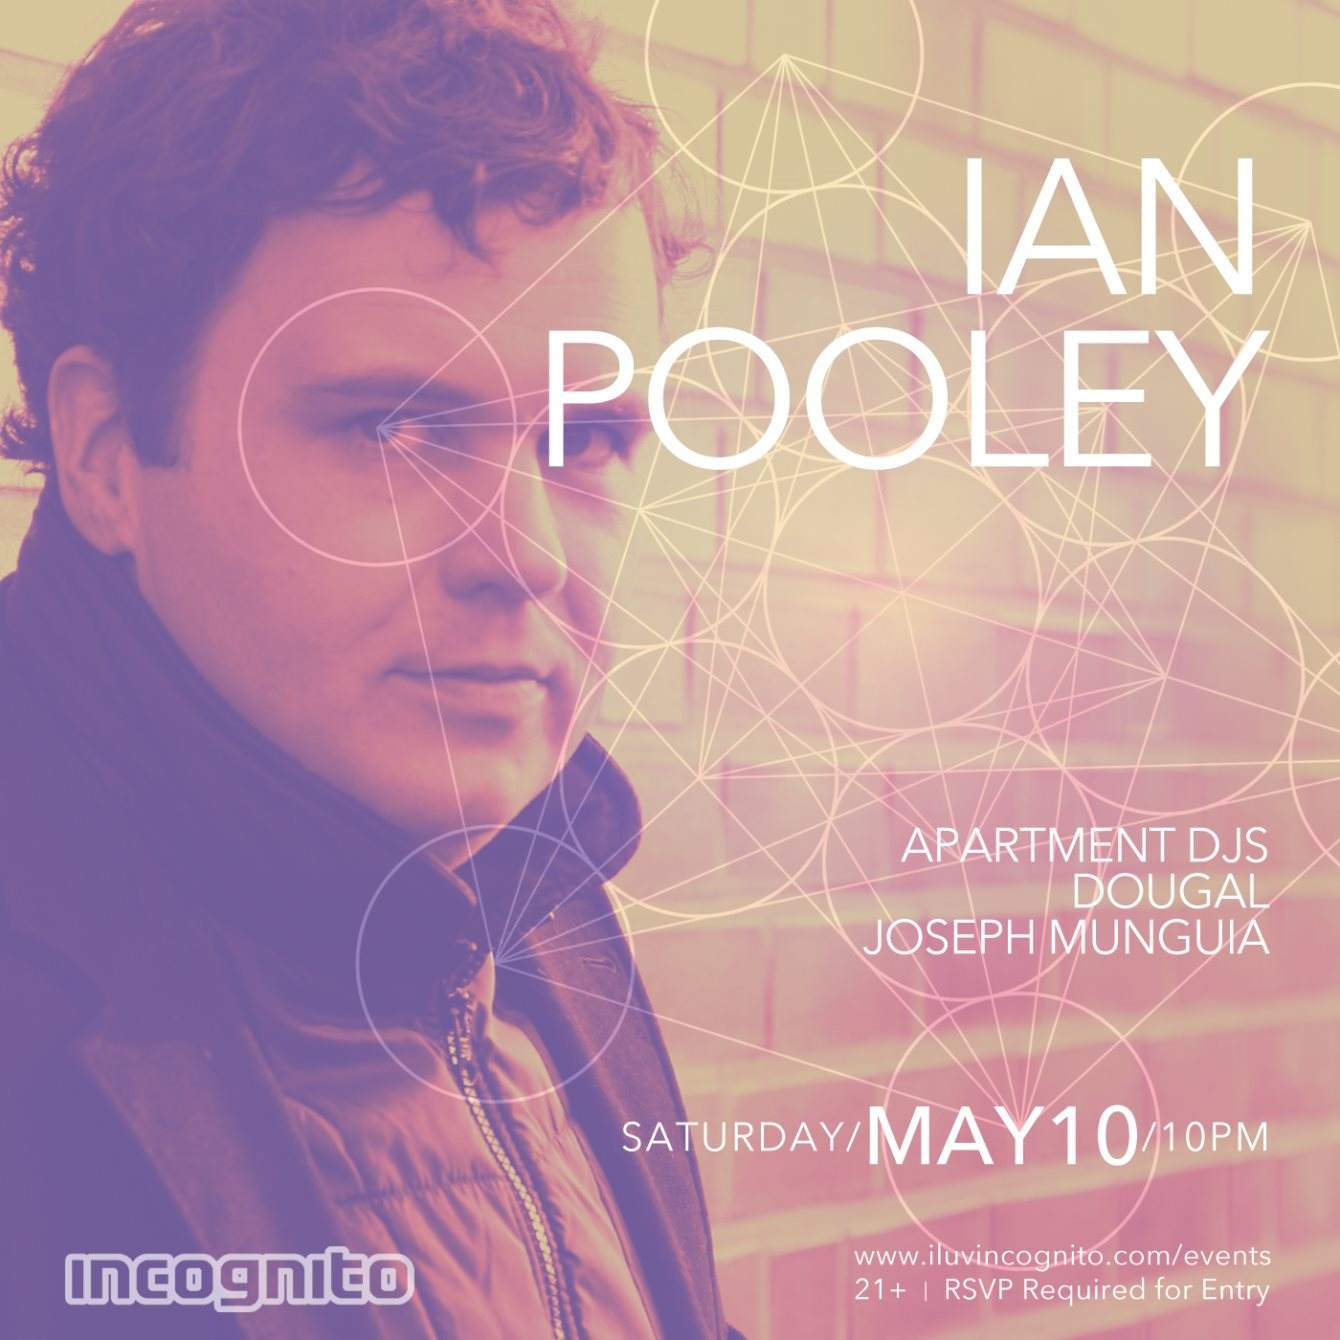 Incognito presents Ian Pooley - Página frontal